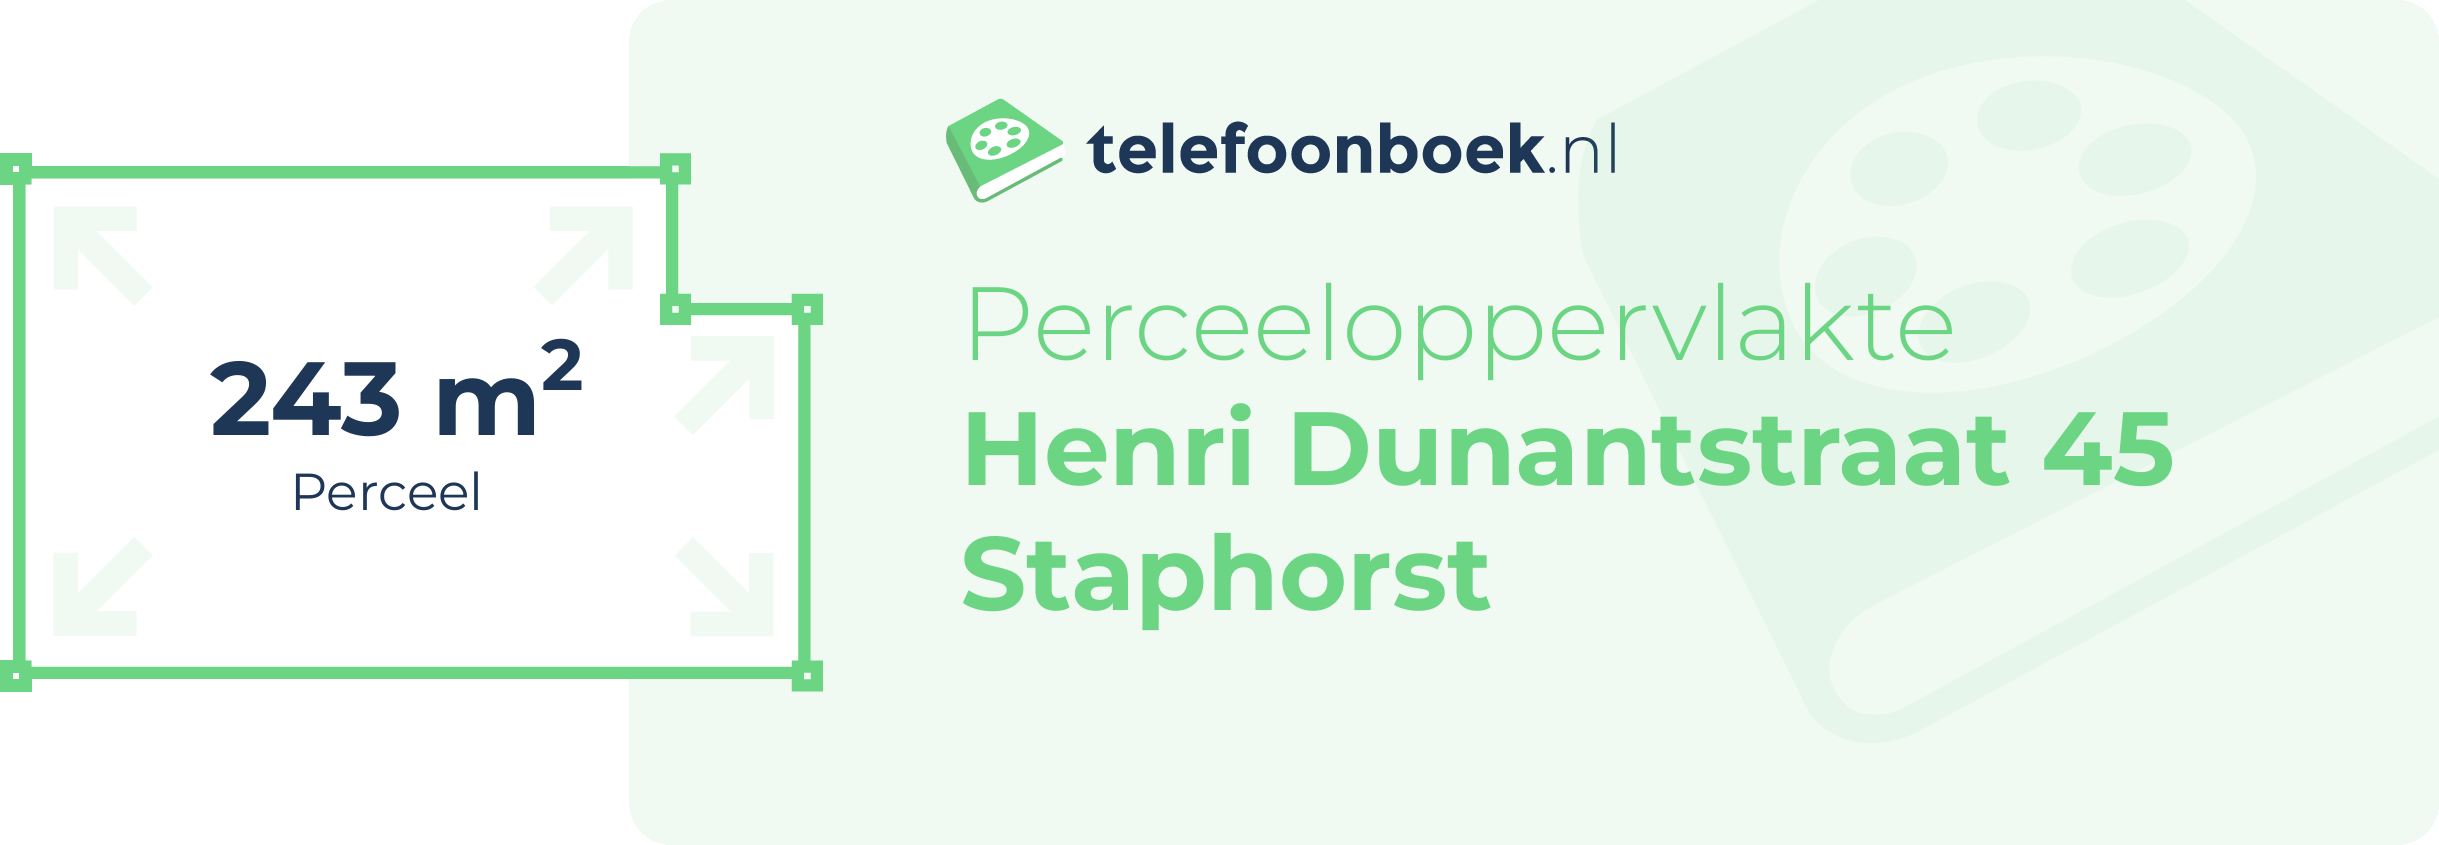 Perceeloppervlakte Henri Dunantstraat 45 Staphorst